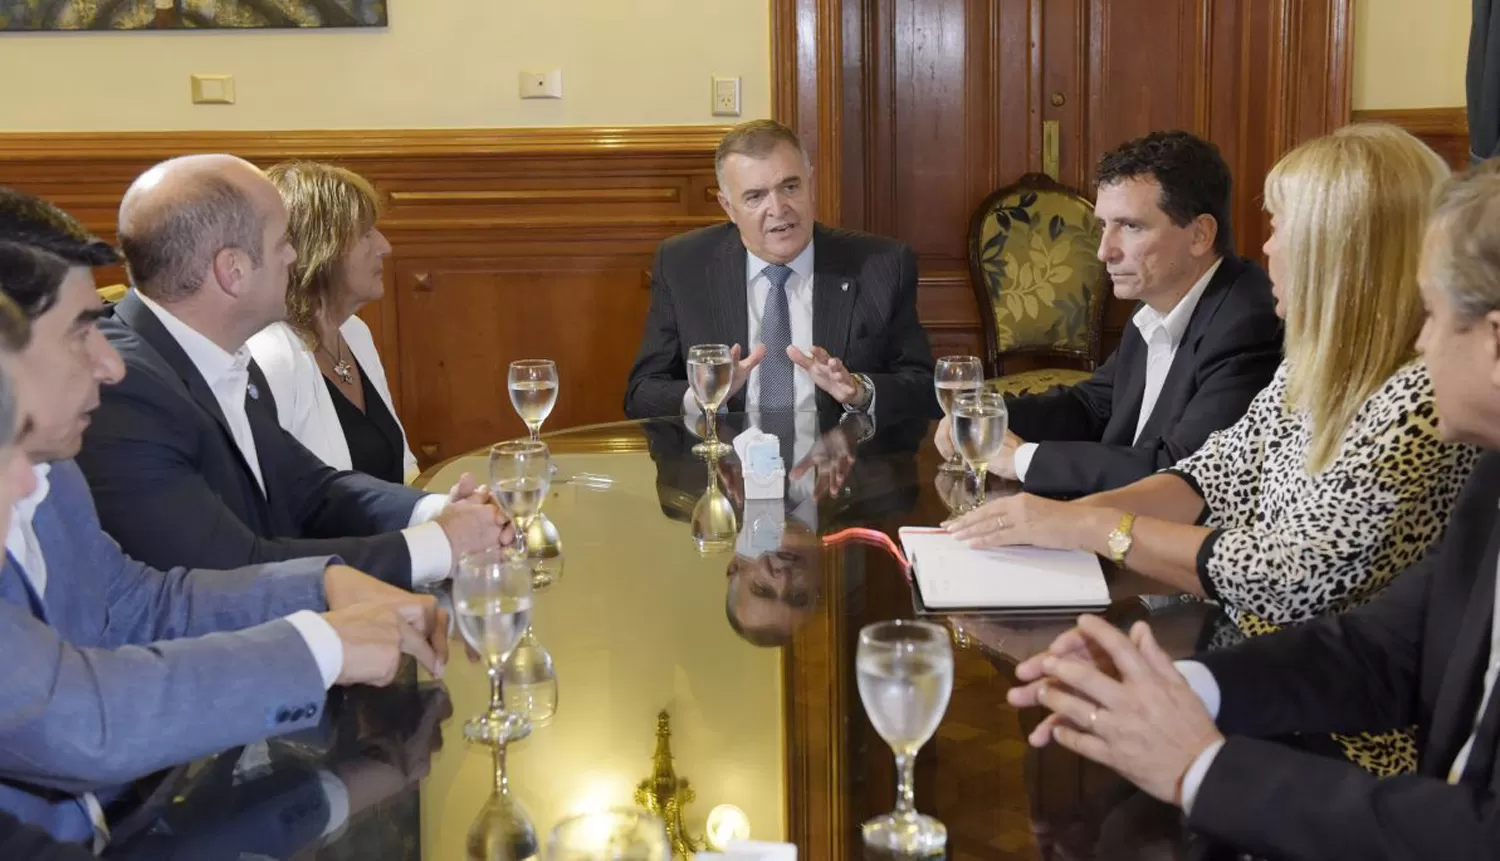 REUNIÓN. Participaron el vicegobernador, Osvaldo Jaldo; funcionarios del gobierno y empresarios del rubro.